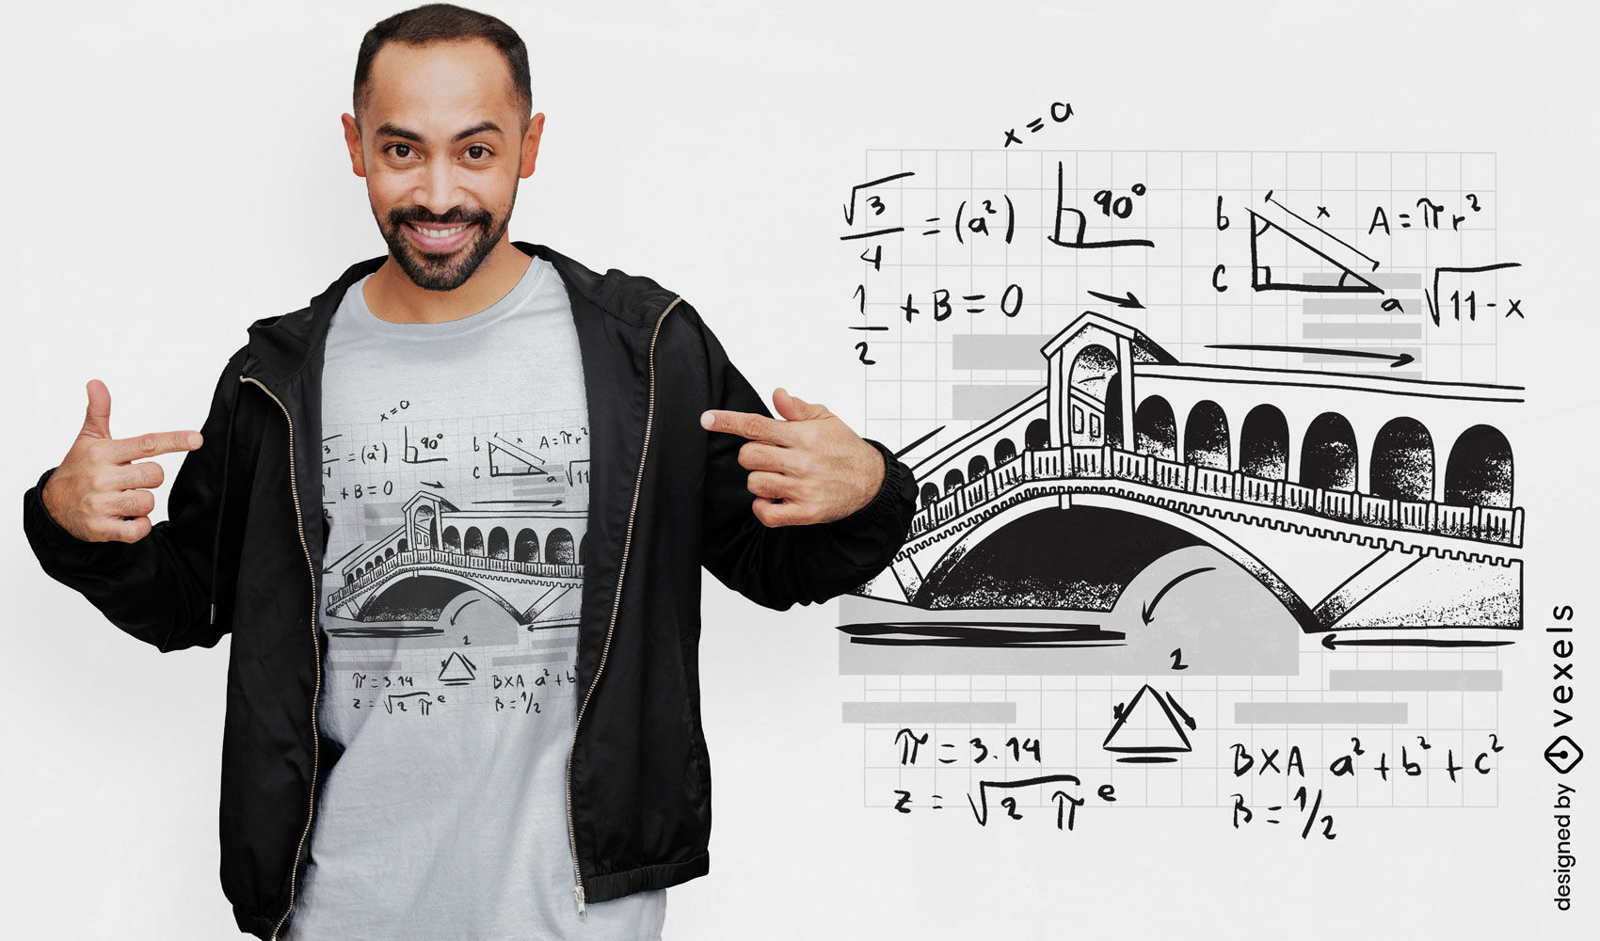 Ponte com design de camiseta de equações matemáticas